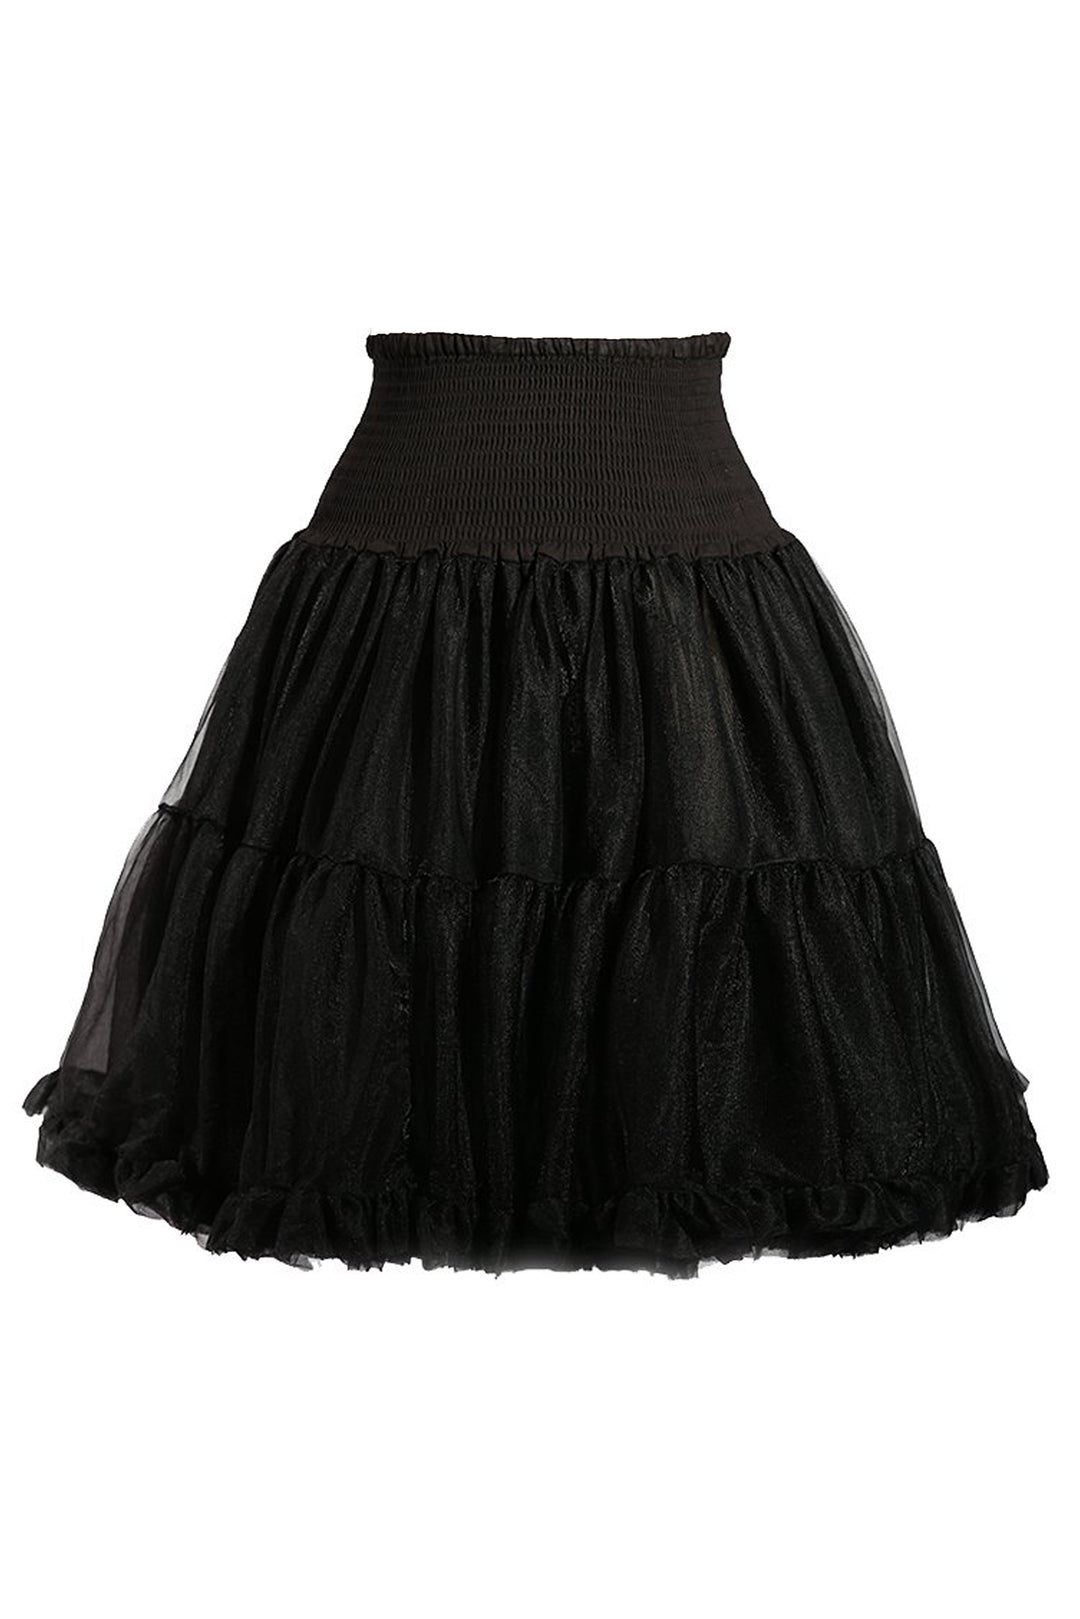 Vintage Classic Petticoat (Black)